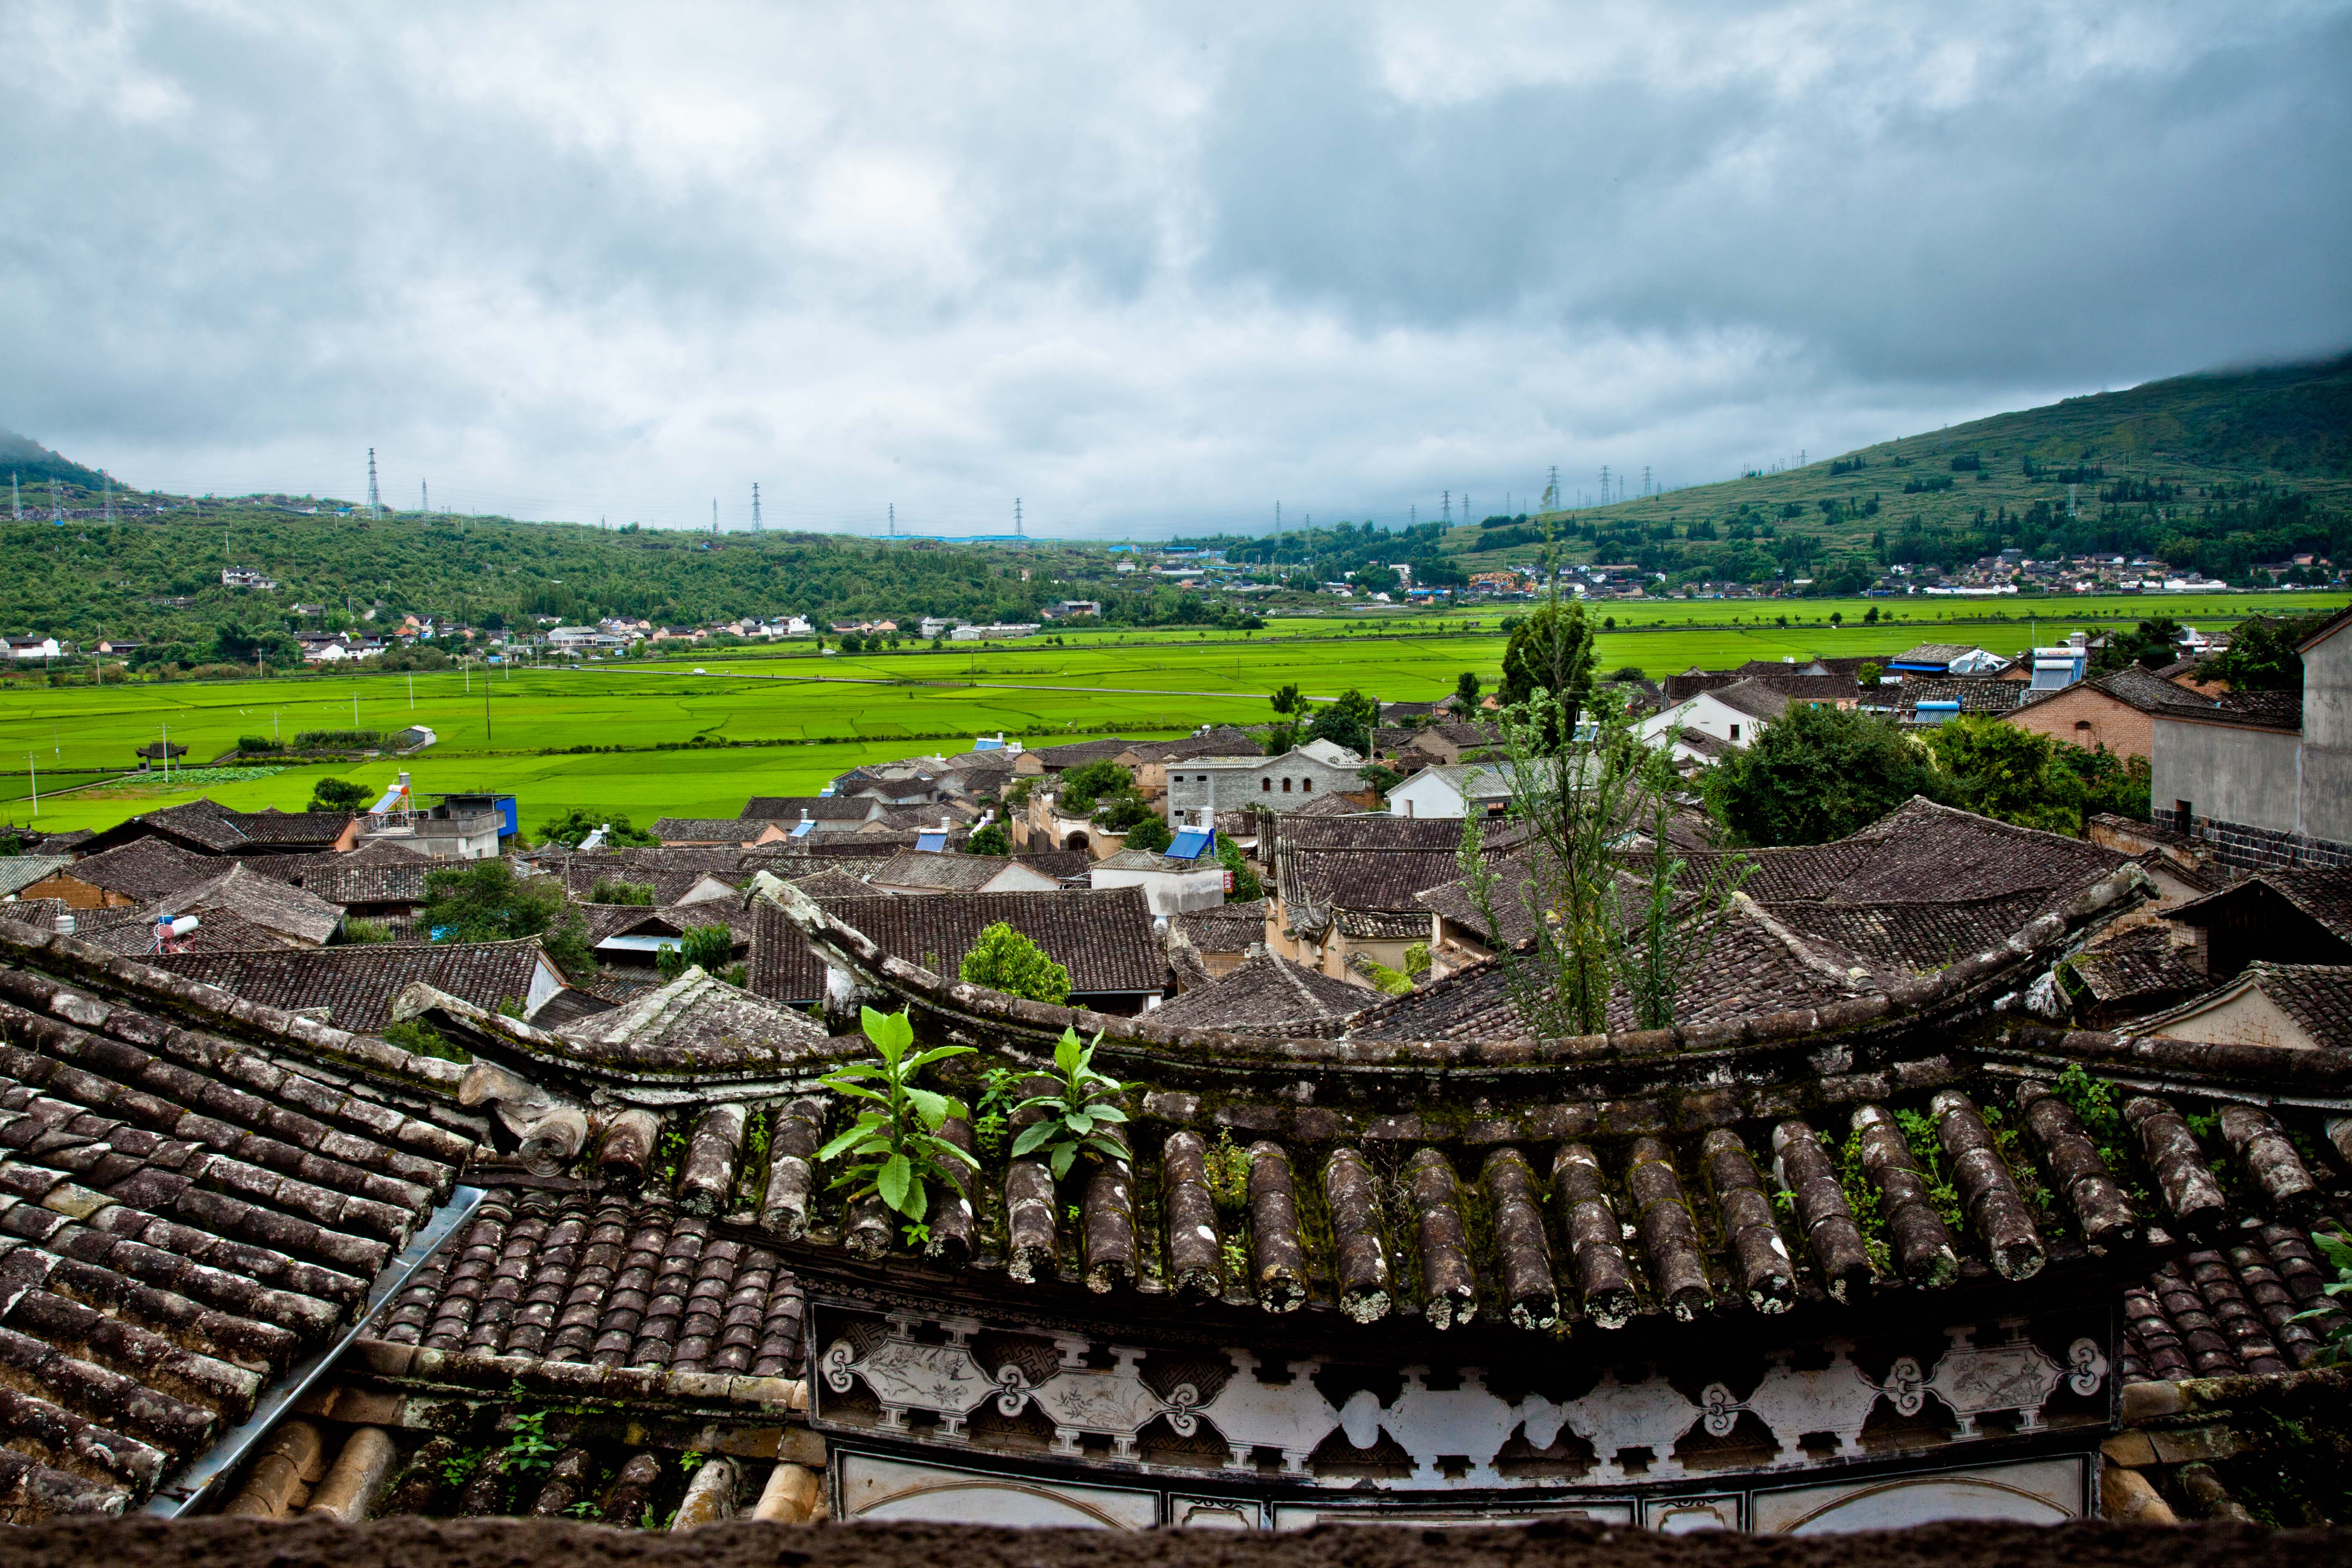 天龙屯堡 天龙屯堡是一处鲜为人知的古镇,藏在贵州腹地的大山深处